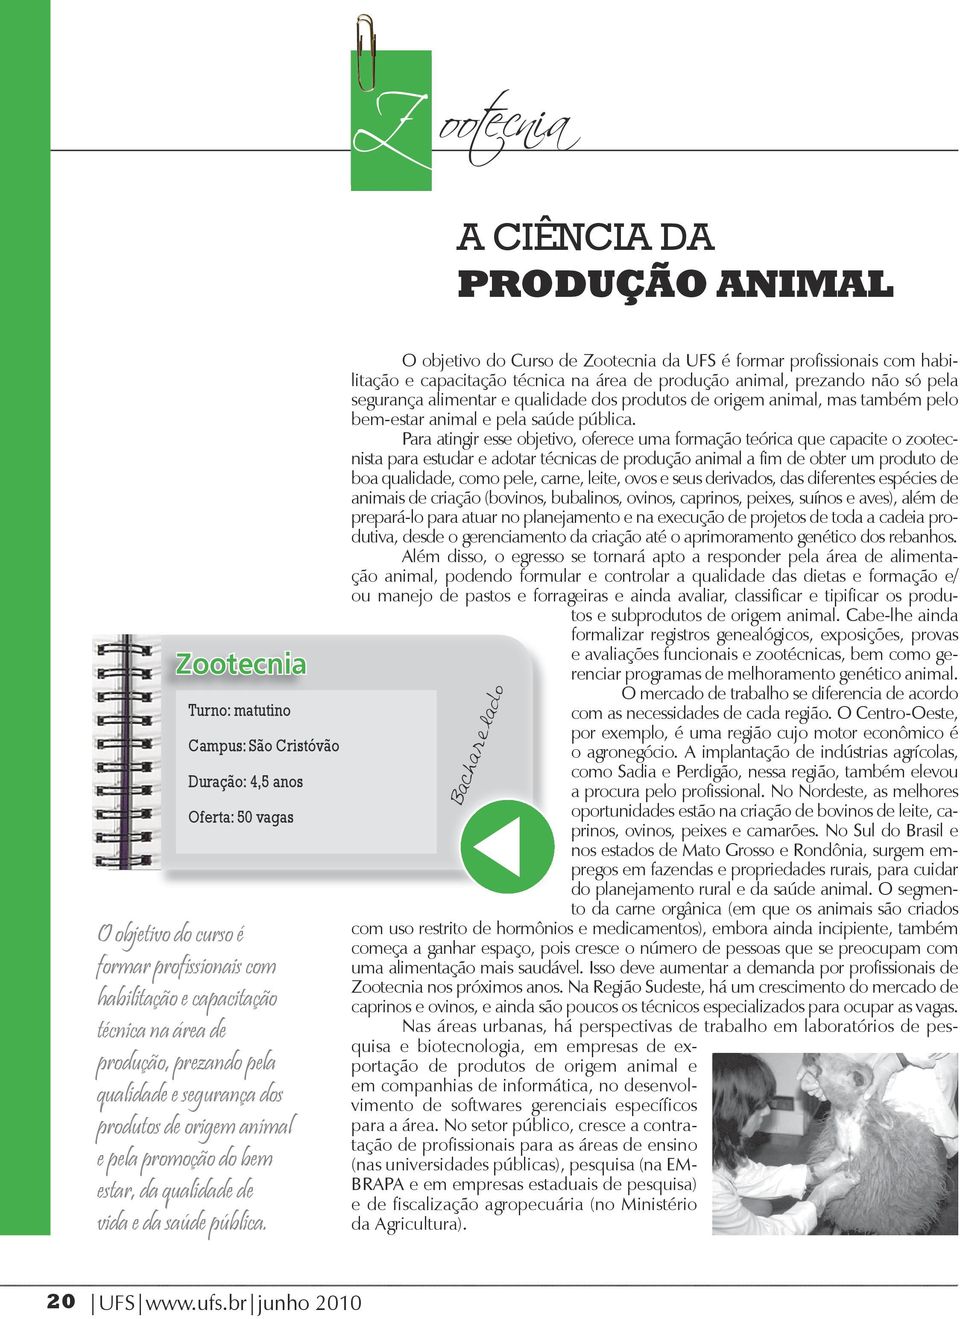 O objetivo do Curso de Zootecnia da UFS é formar profissionais com habilitação e capacitação técnica na área de produção animal, prezando não só pela segurança alimentar e qualidade dos produtos de